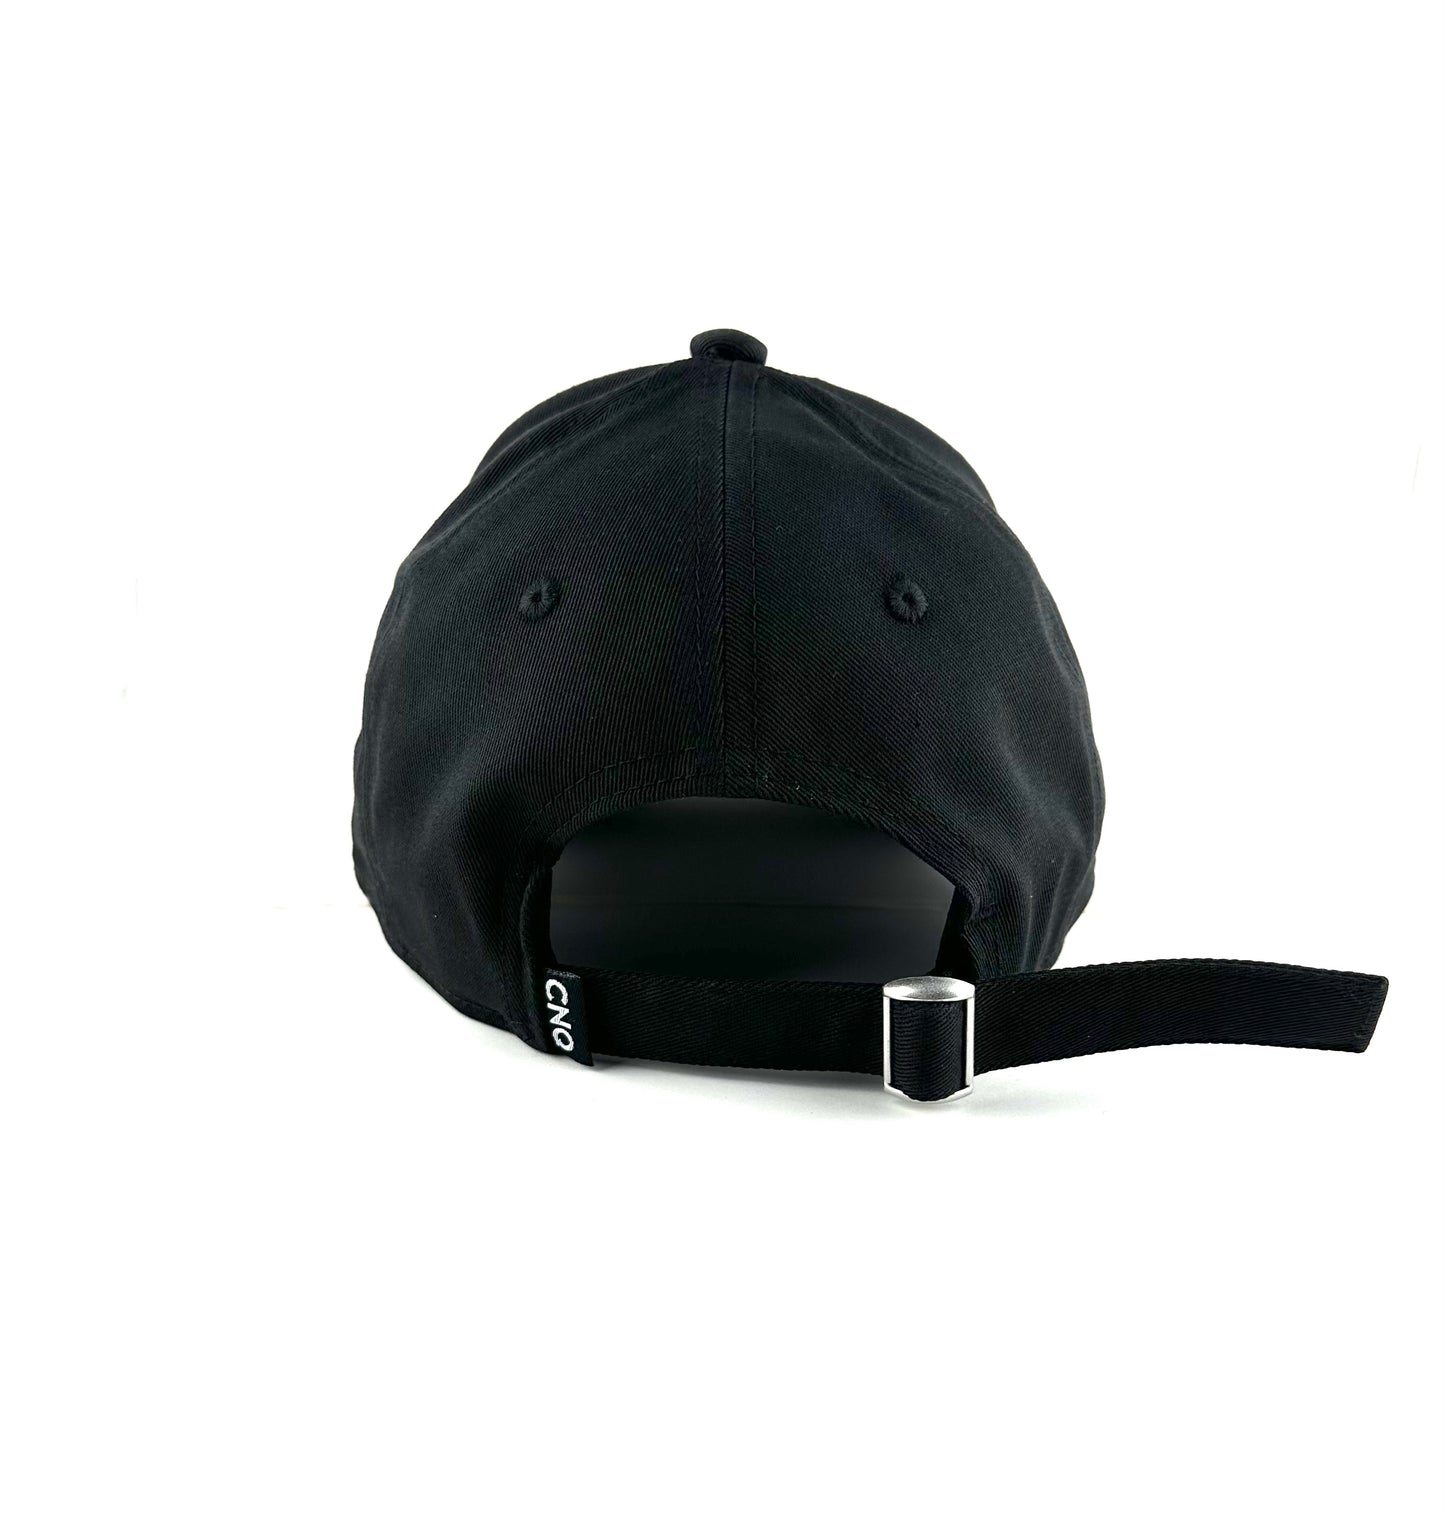 CNQ KING Essentials Adjustable Cap - Black